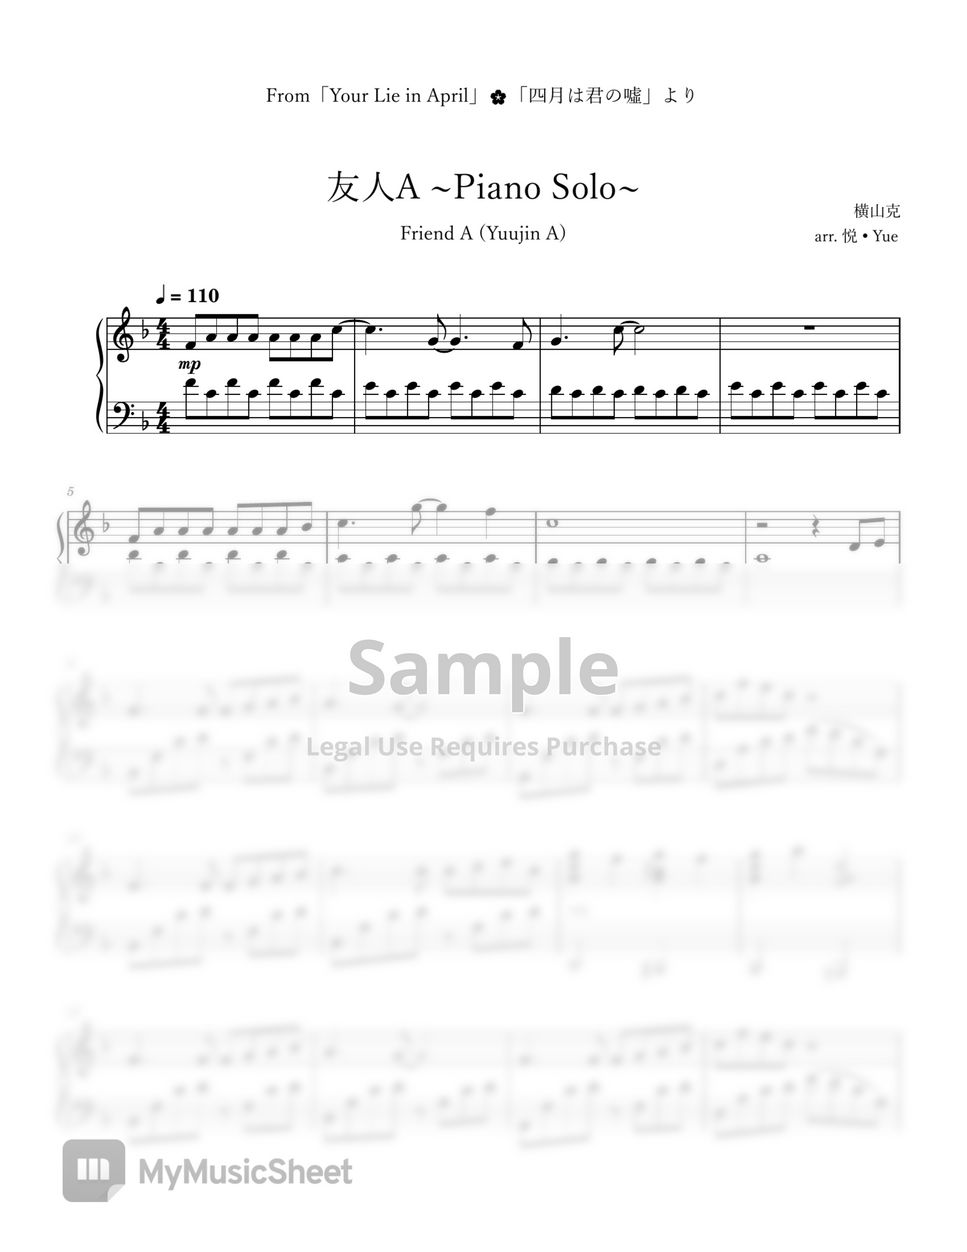 横山克 - Your Lie in April「友人A」(Yuujin A) Piano by 悦 • Yue